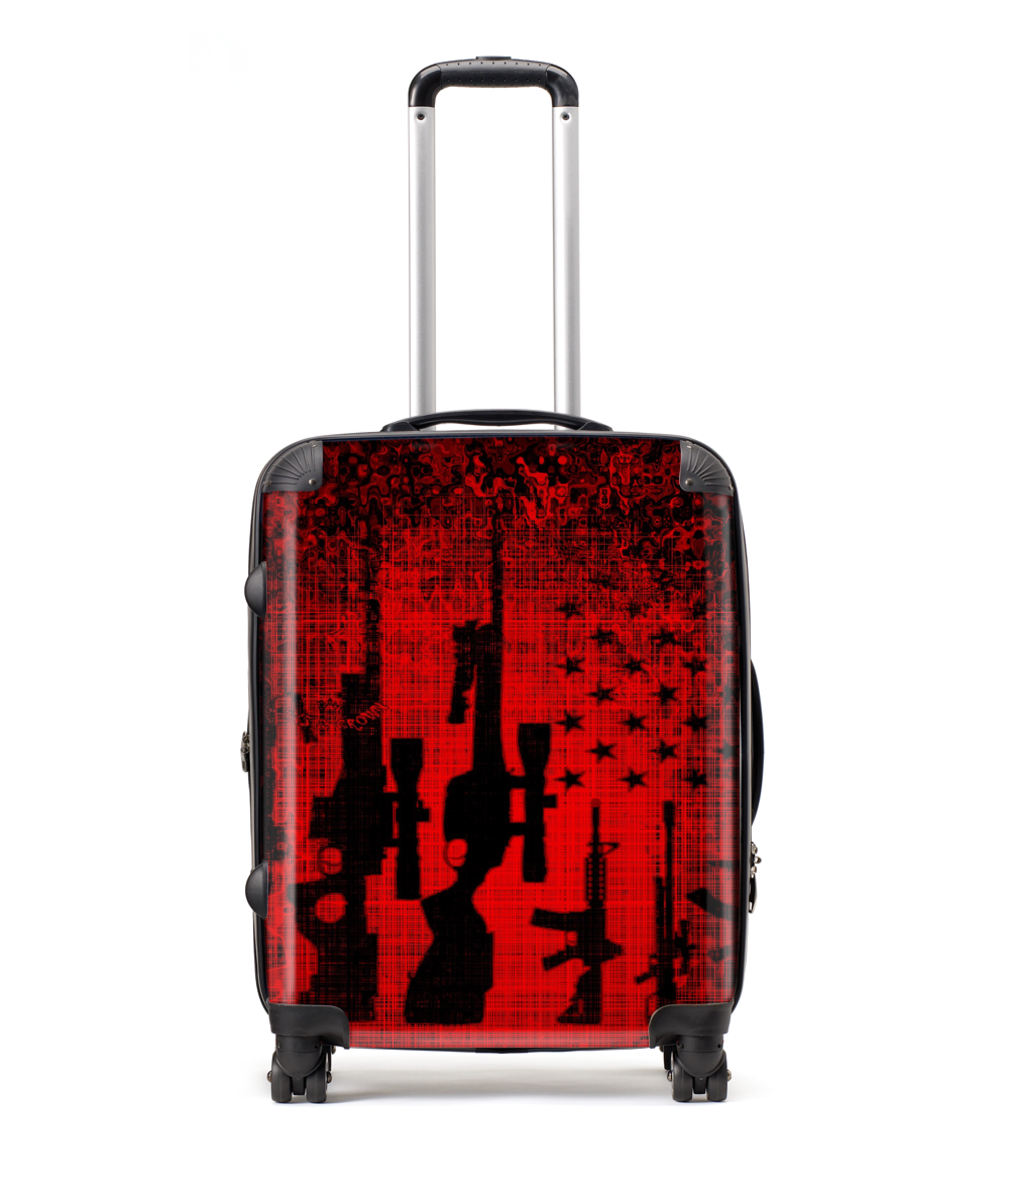 Red/guns print Large Suitcase 25